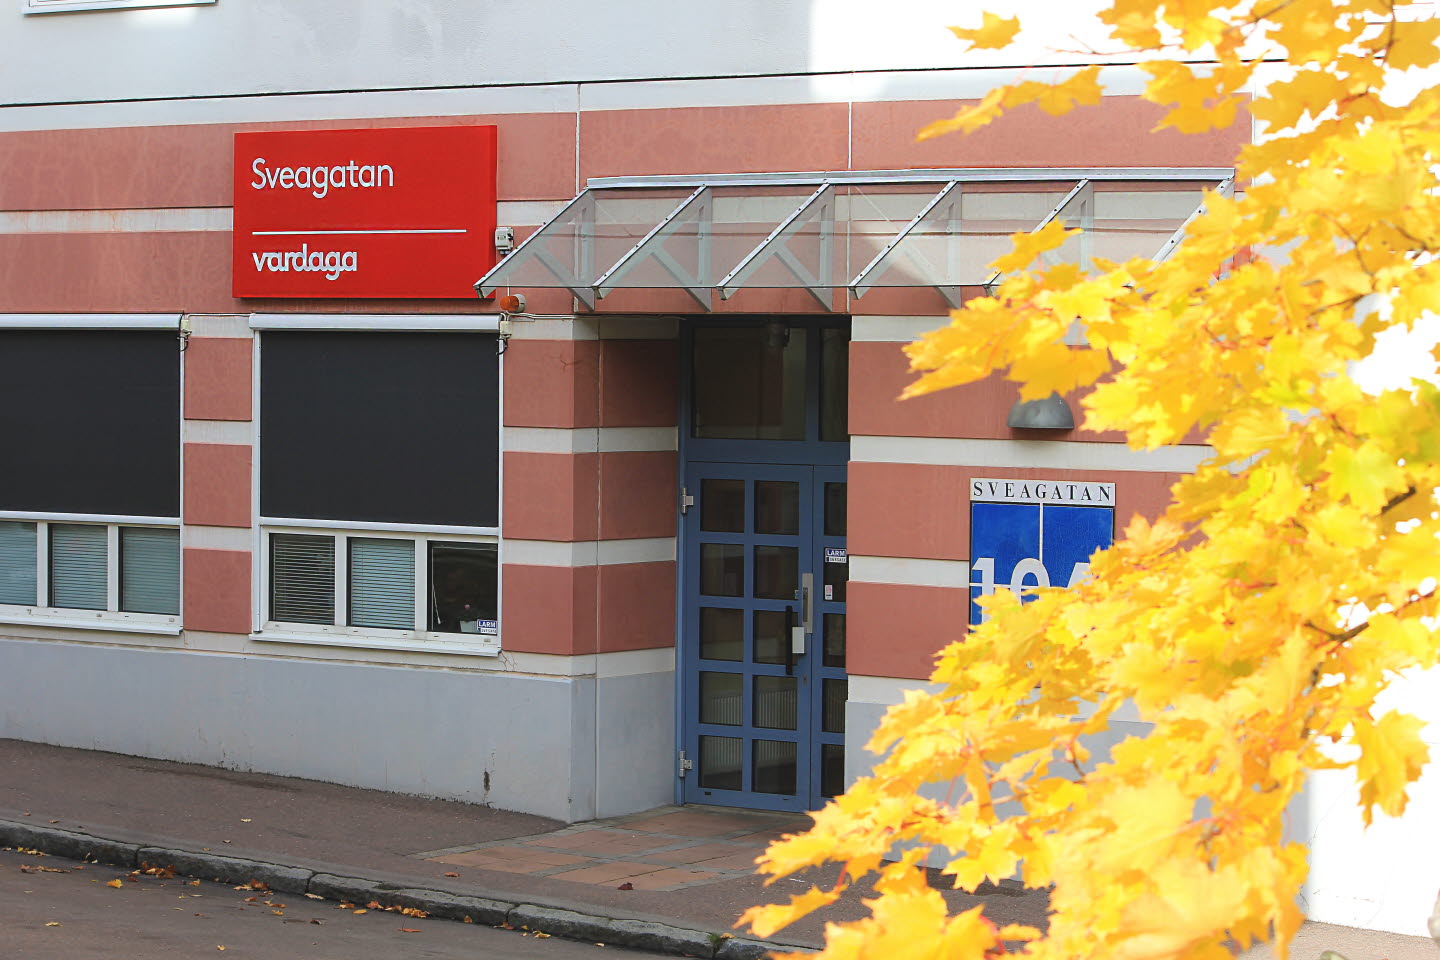 Vardagas huvudentré med en röd skylt ovan med texten "Sveagatan, Vardaga". Bredvid byggnanden syns gula löv från en lönn. 